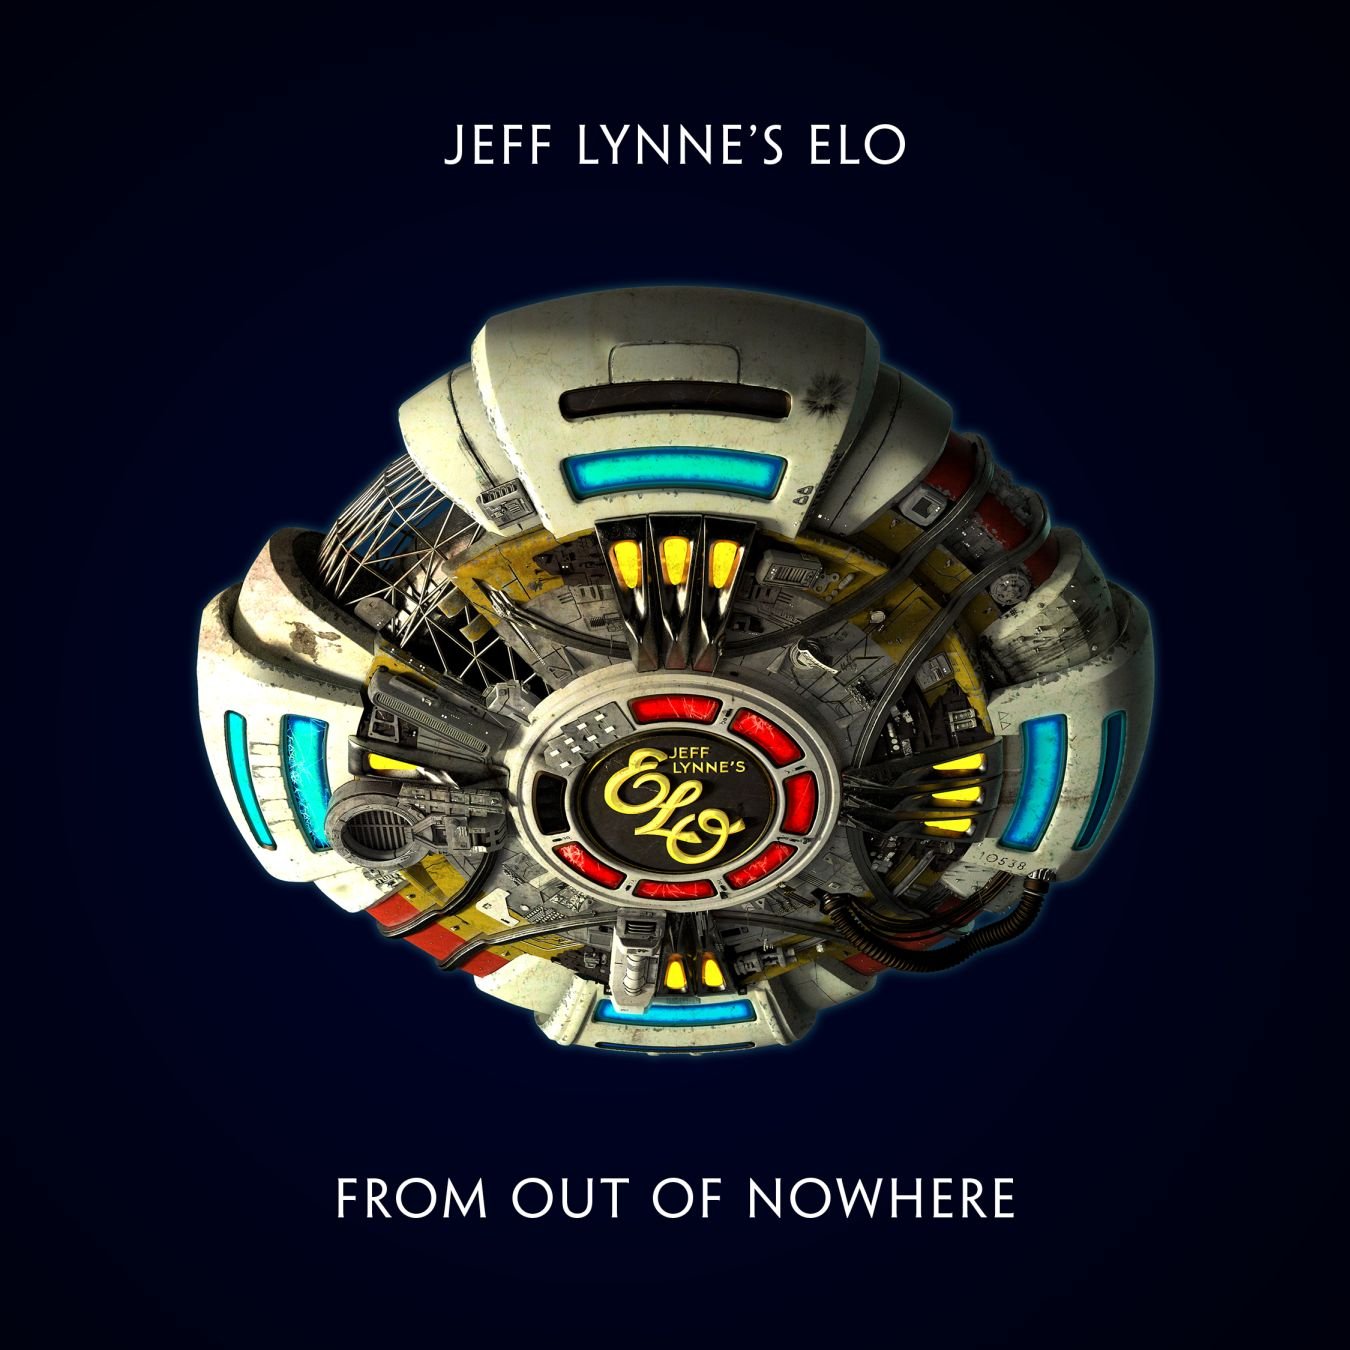 Il 1 novembre esce “From Out Of Nowhere” il nuovo album della band Jeff Lynne’s Elo.